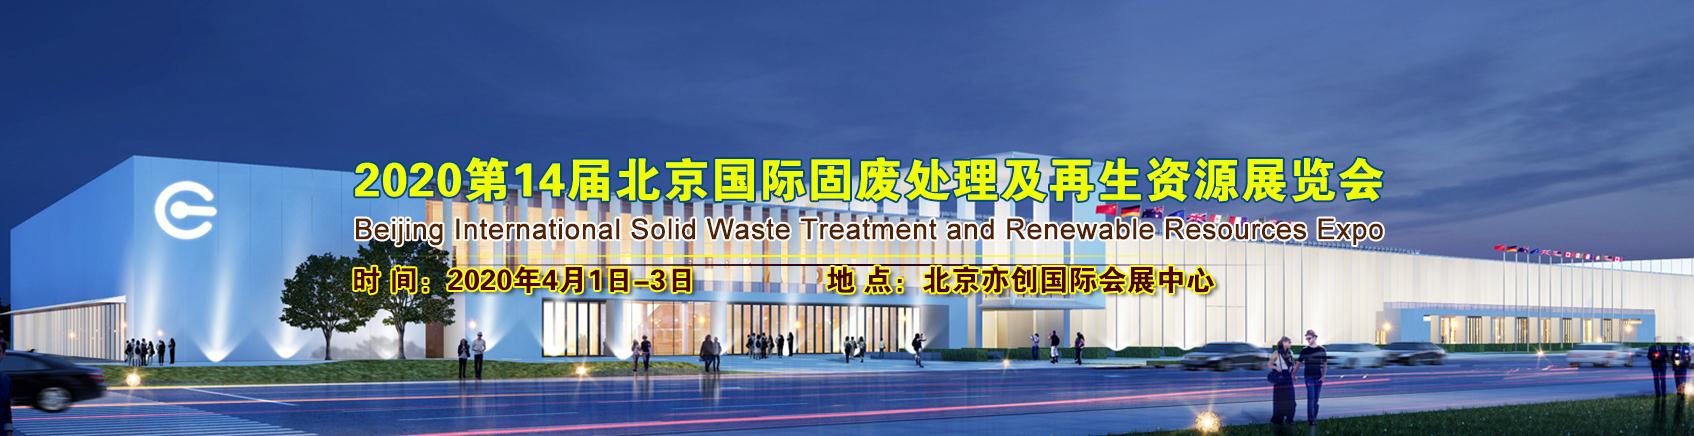 2020北京国际固废处理及再生资源展览会